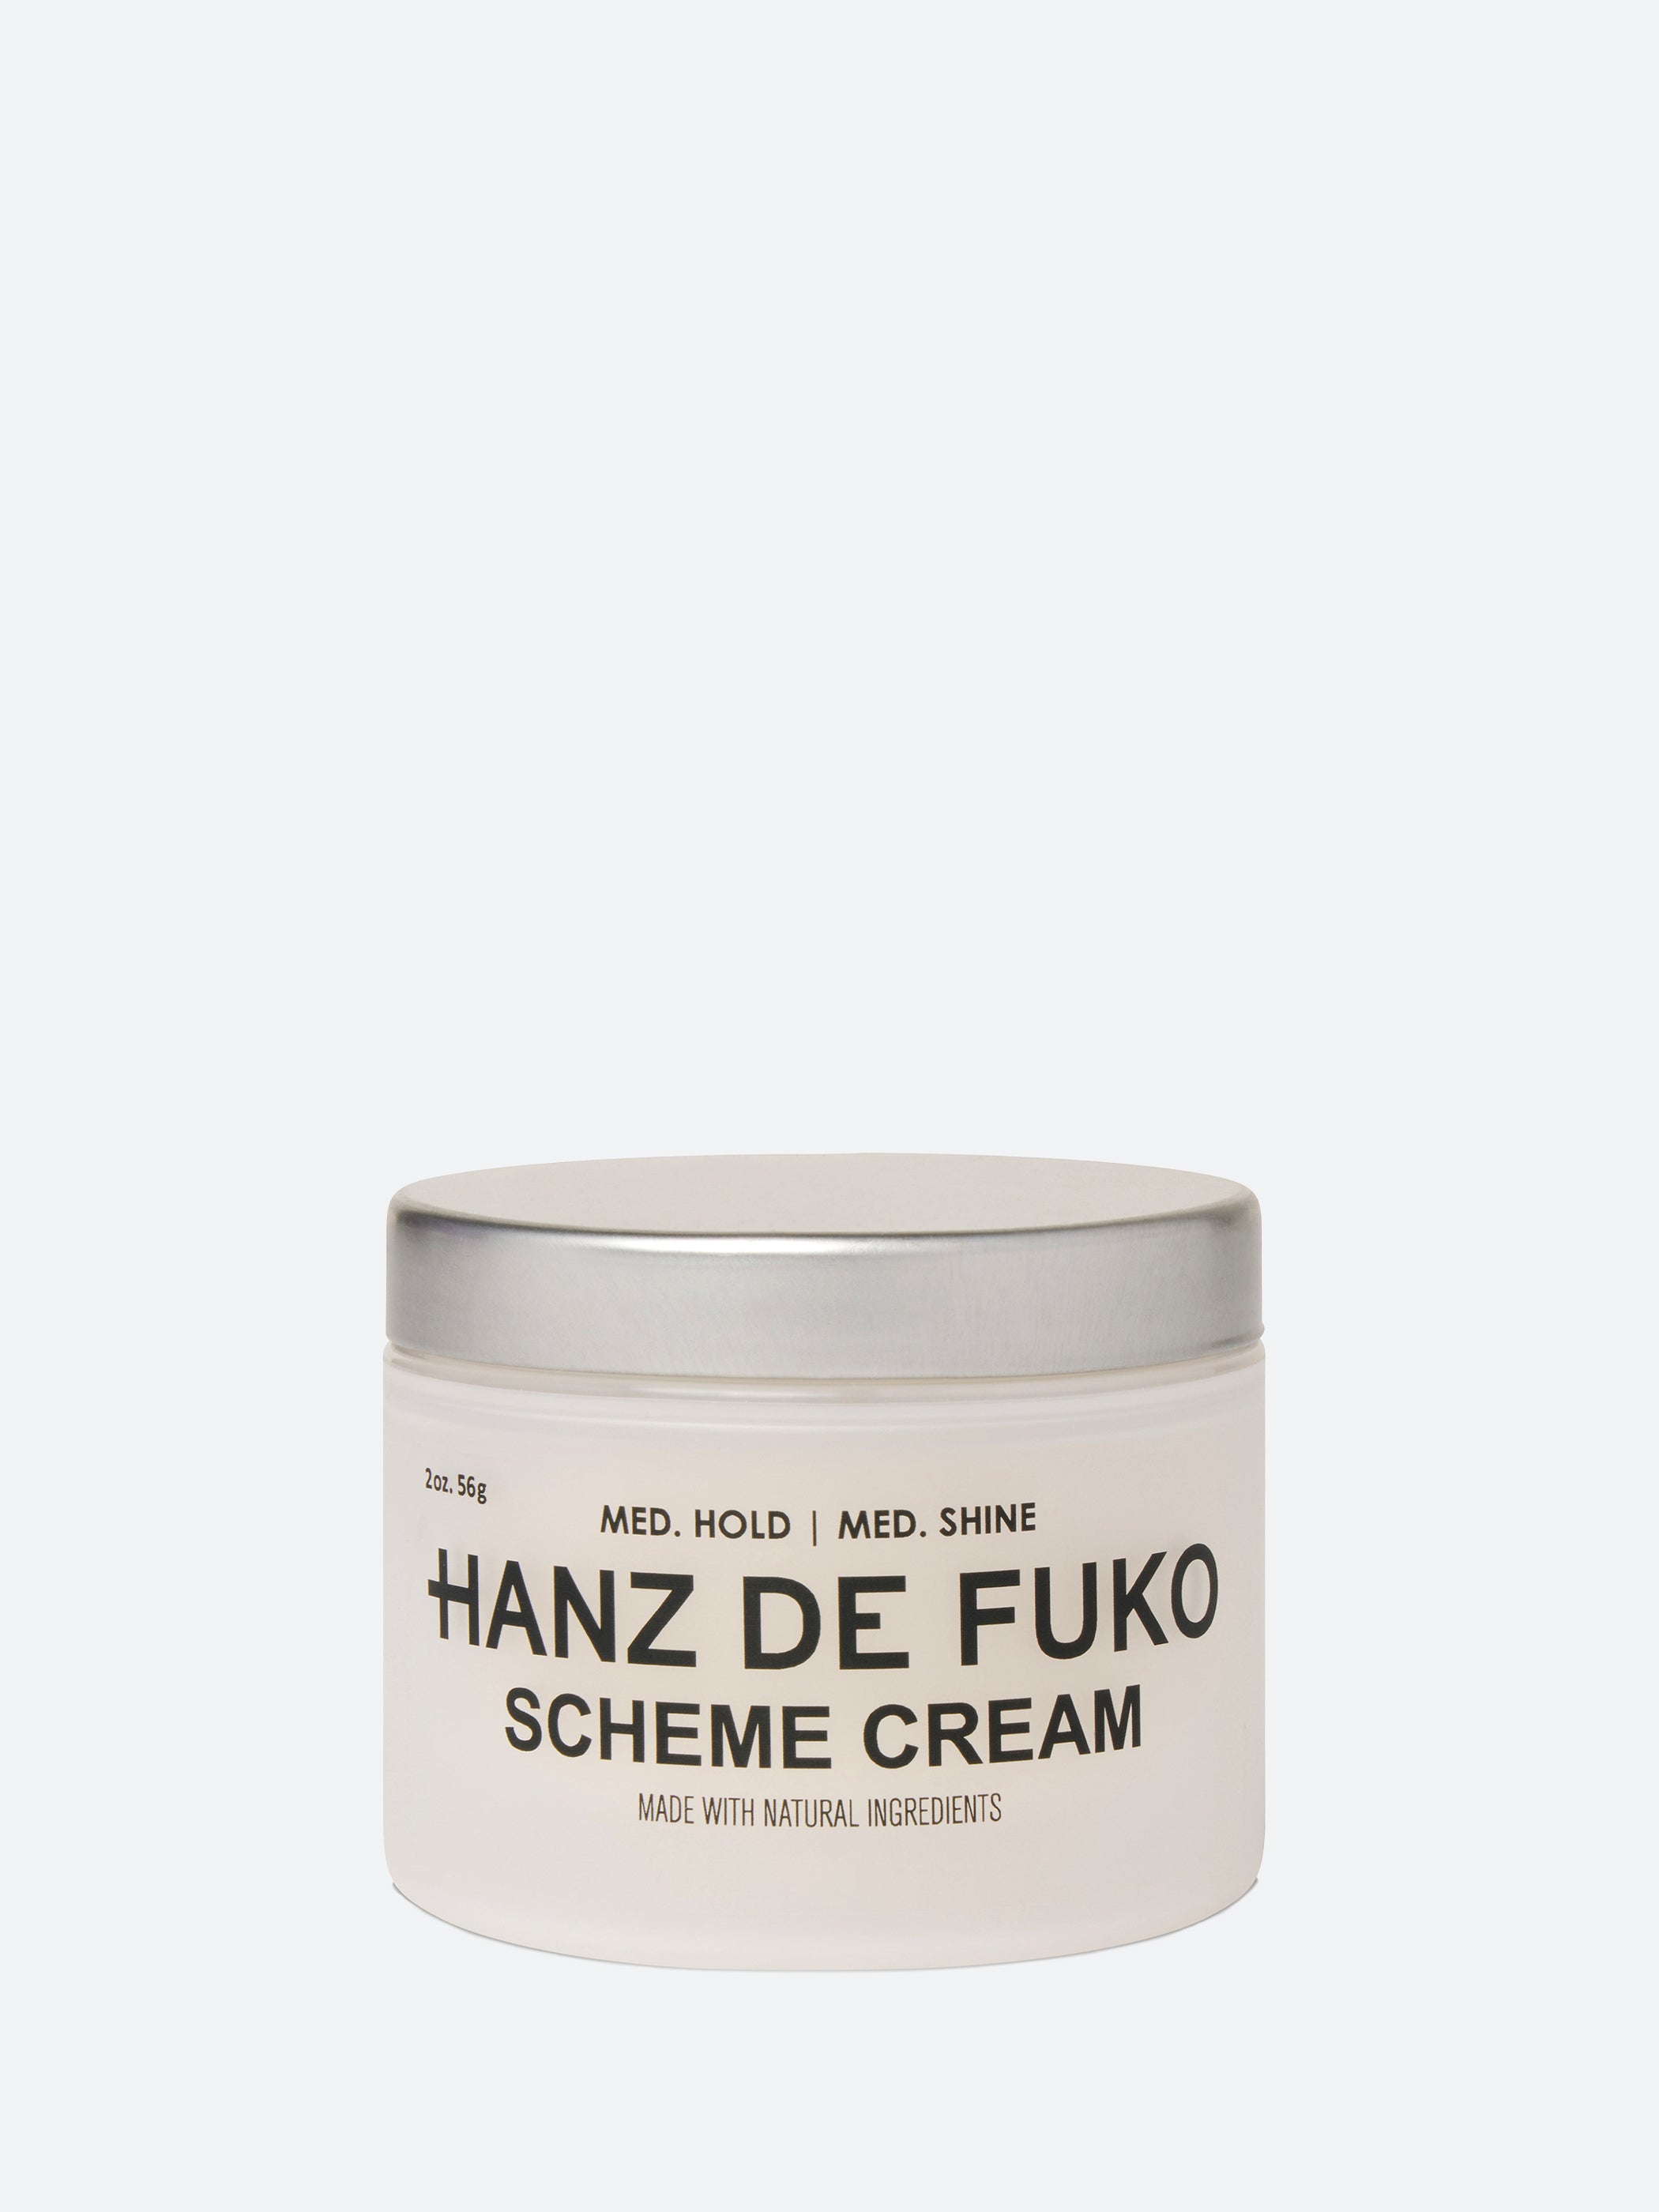 Scheme Cream